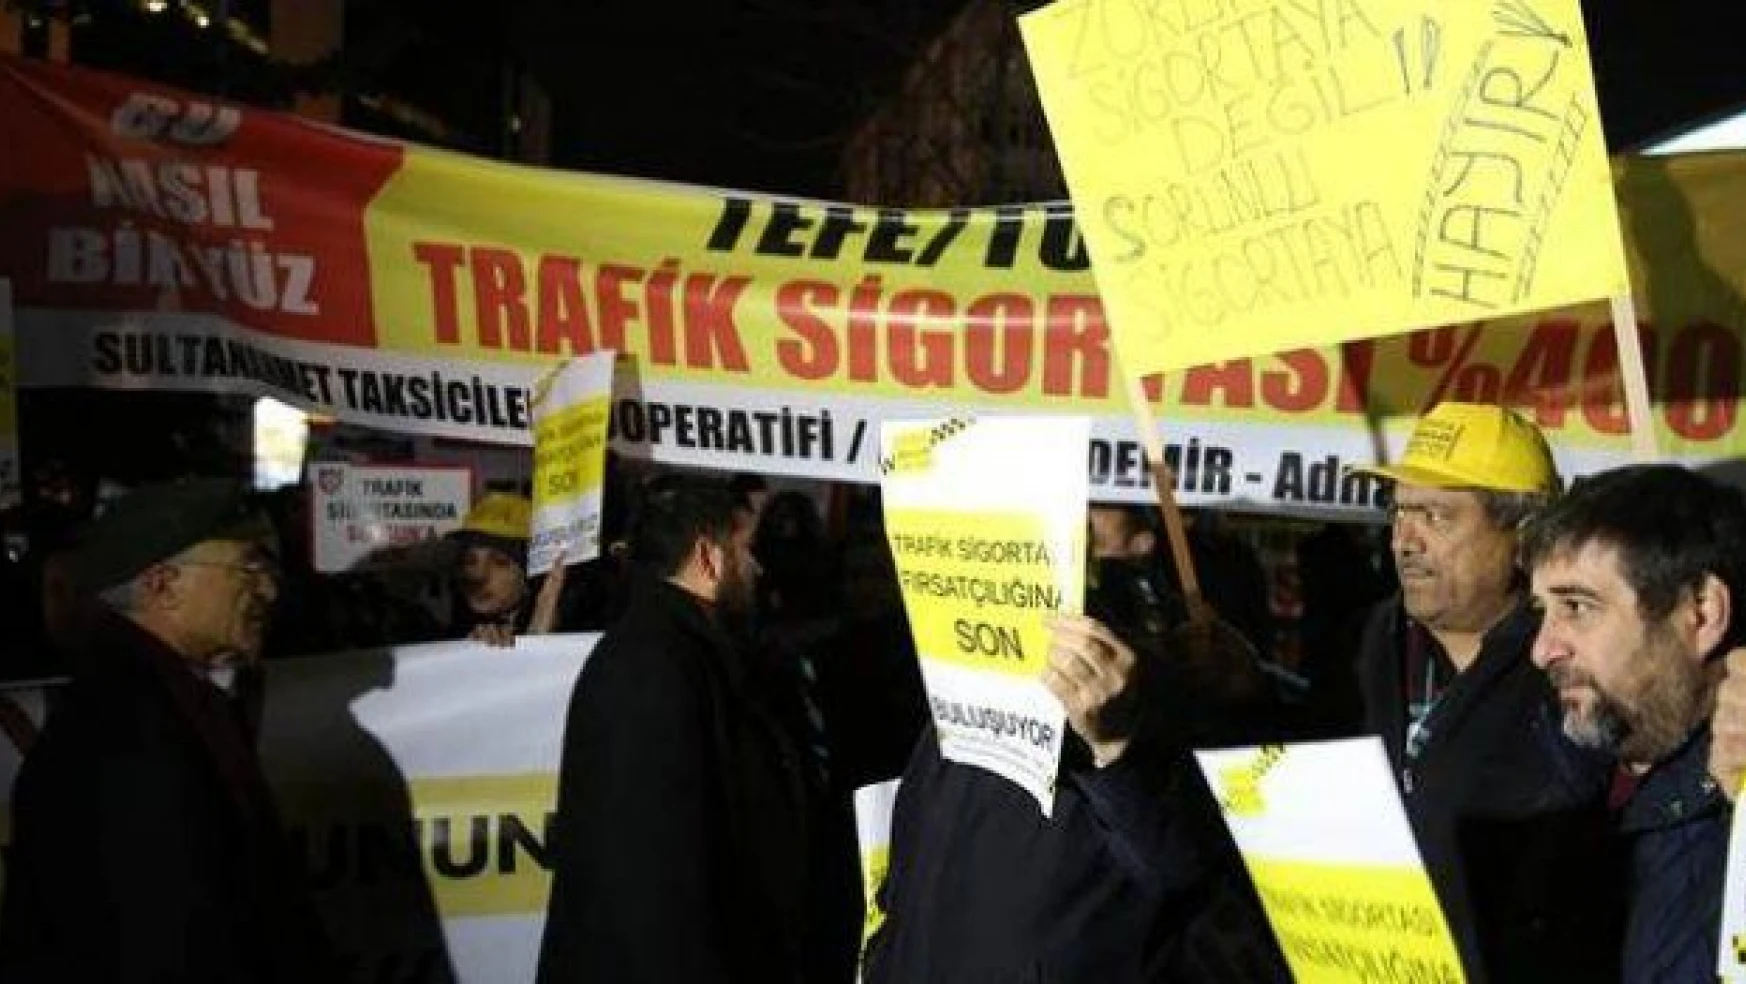 Zorunlu Trafik Sigortası fiyatlarını taksiciler protesto etti